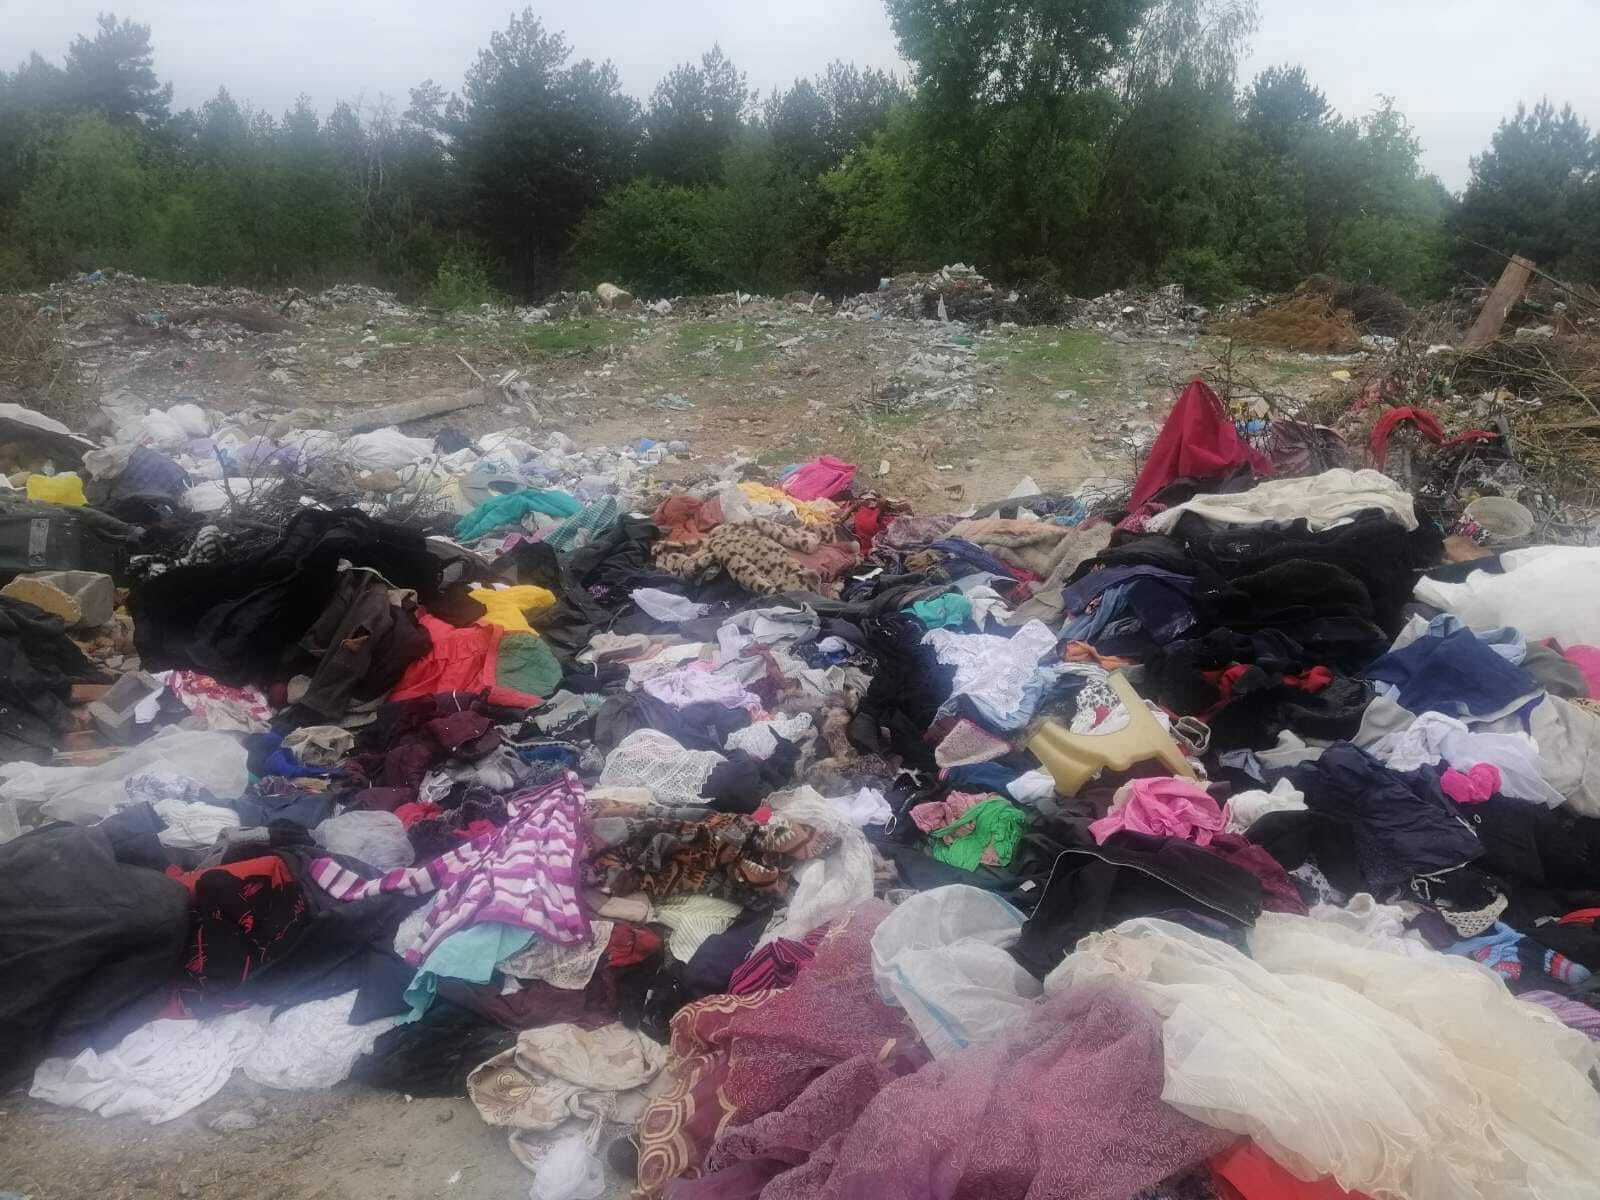 Подержанная одежда на мусорнике Житомирской области